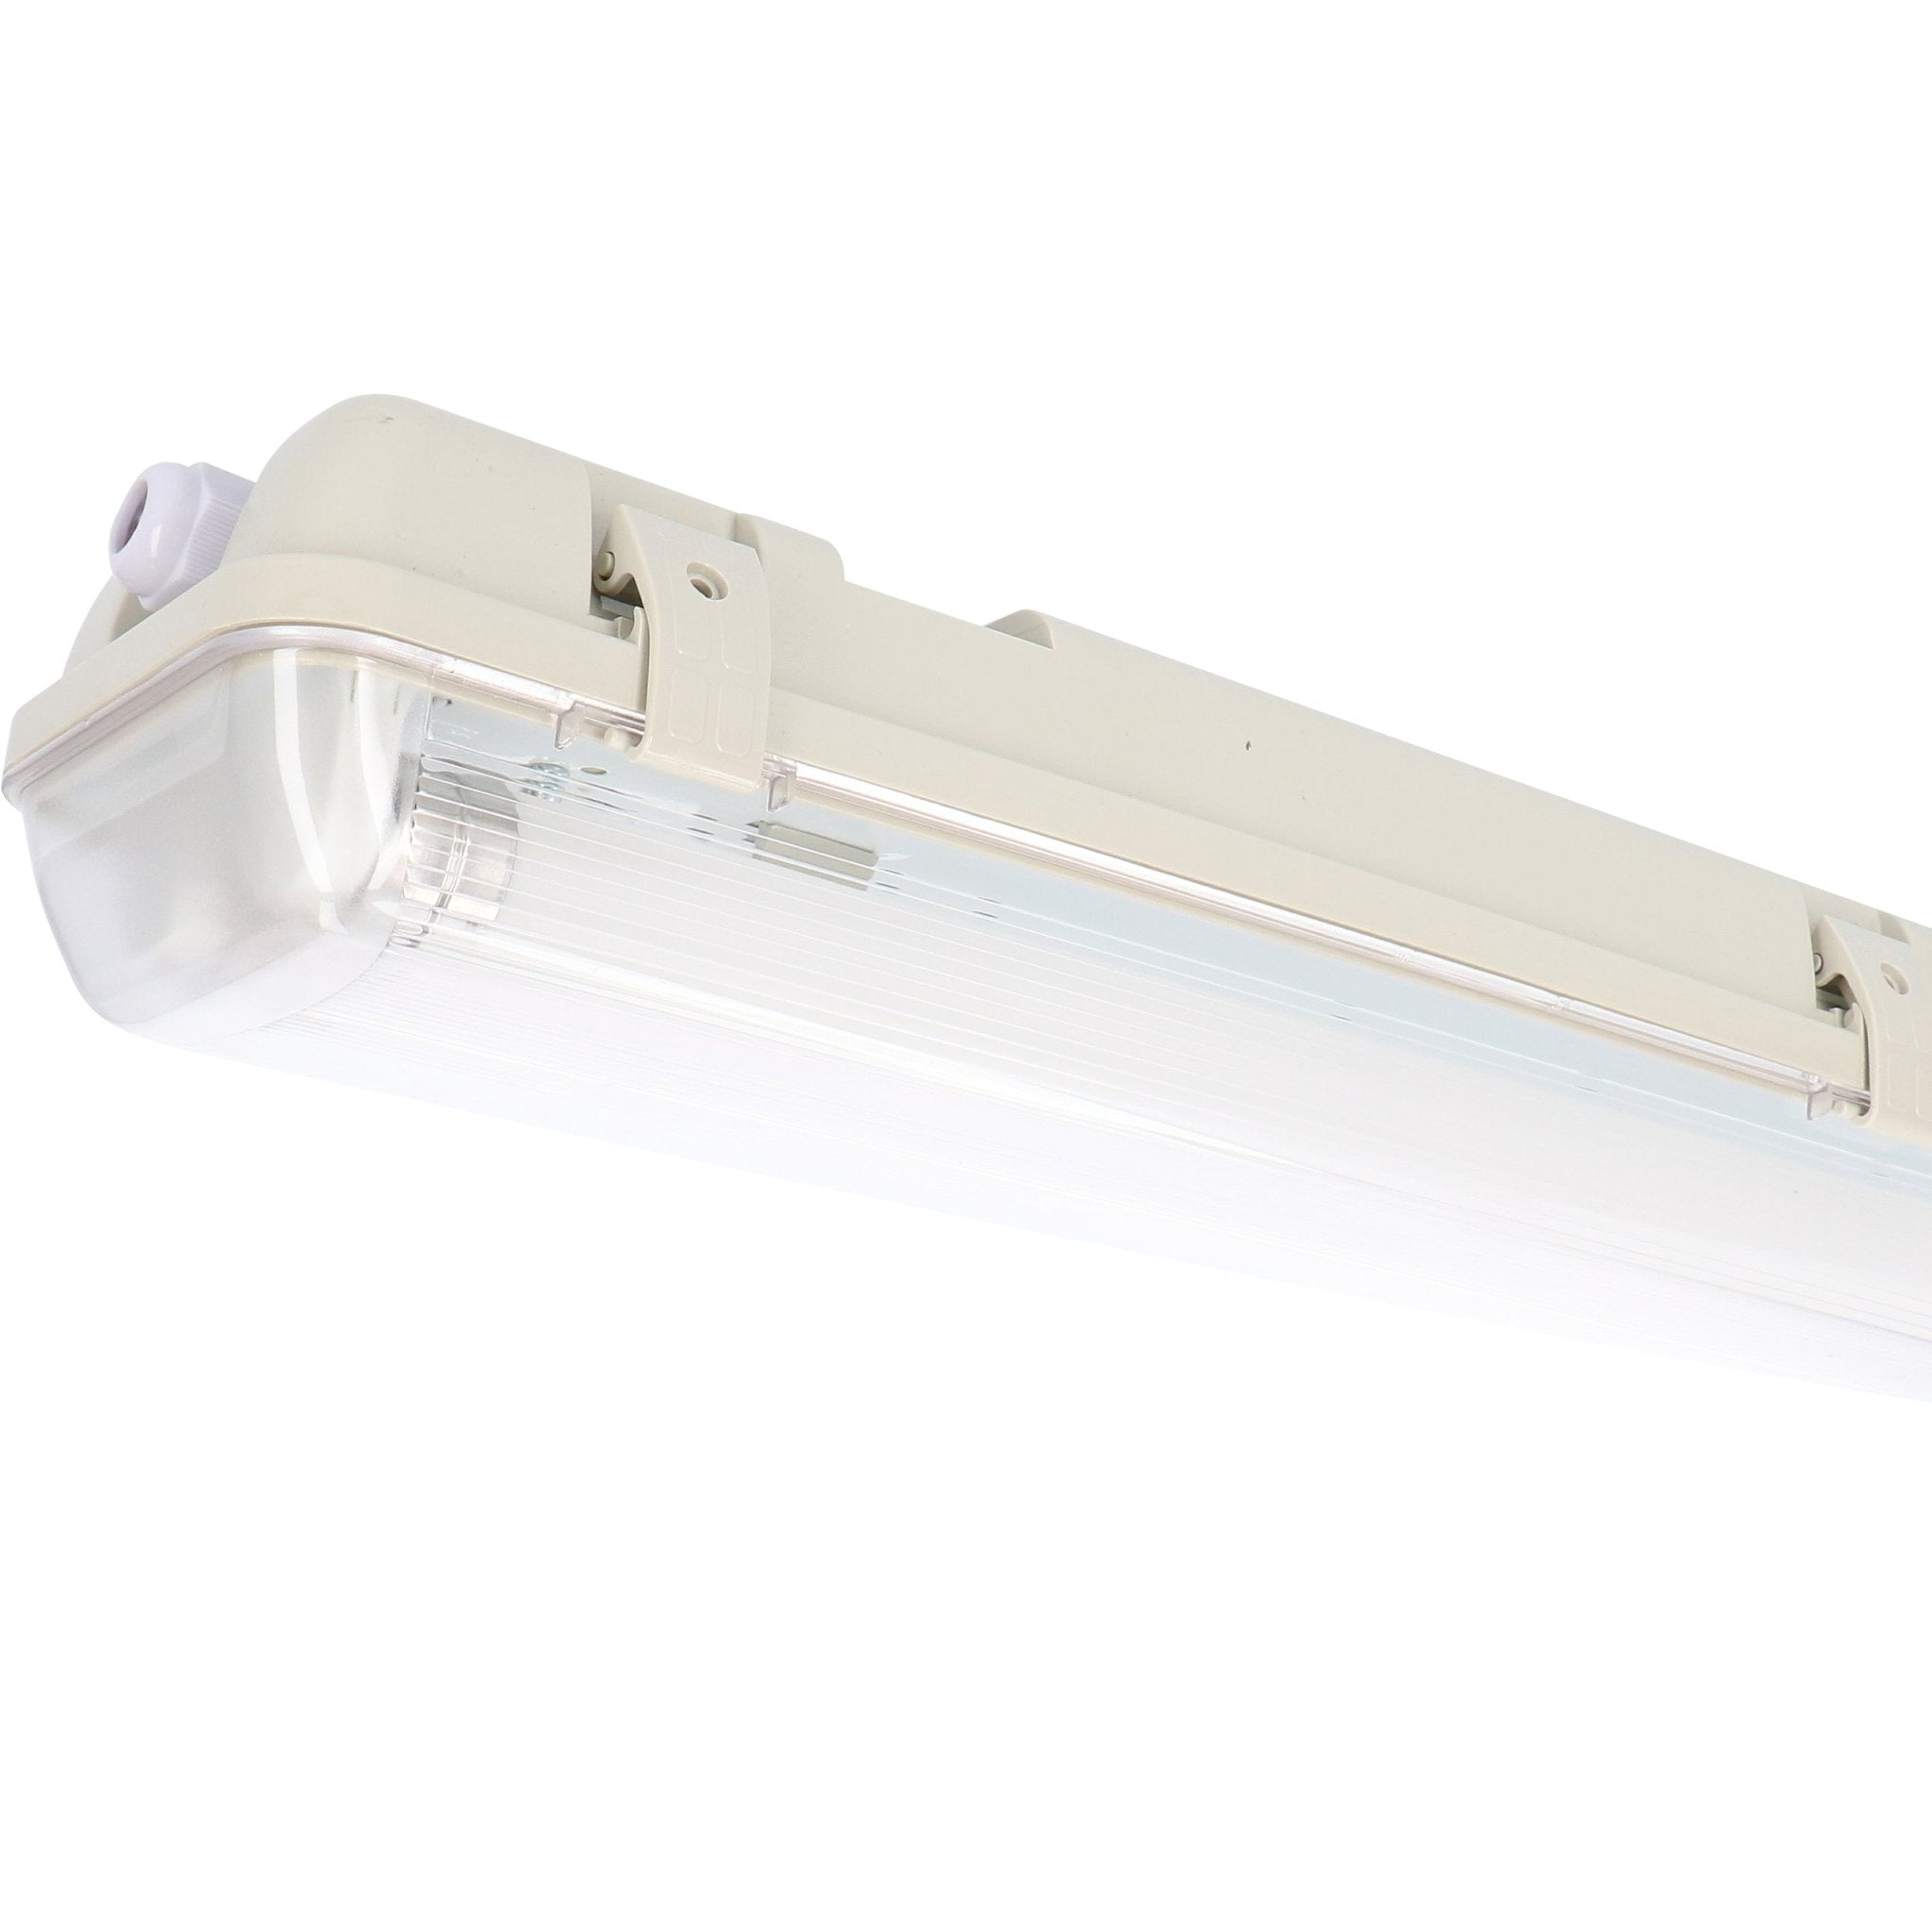 EcoPlus Doppel-LED-Leuchtstofflampe 150 cm – inkl. 2 LED-Leuchtstoffröhren  – Für den Innen- und Außenbereich geeignet – IP65 – 4000 K – 6200 Lumen